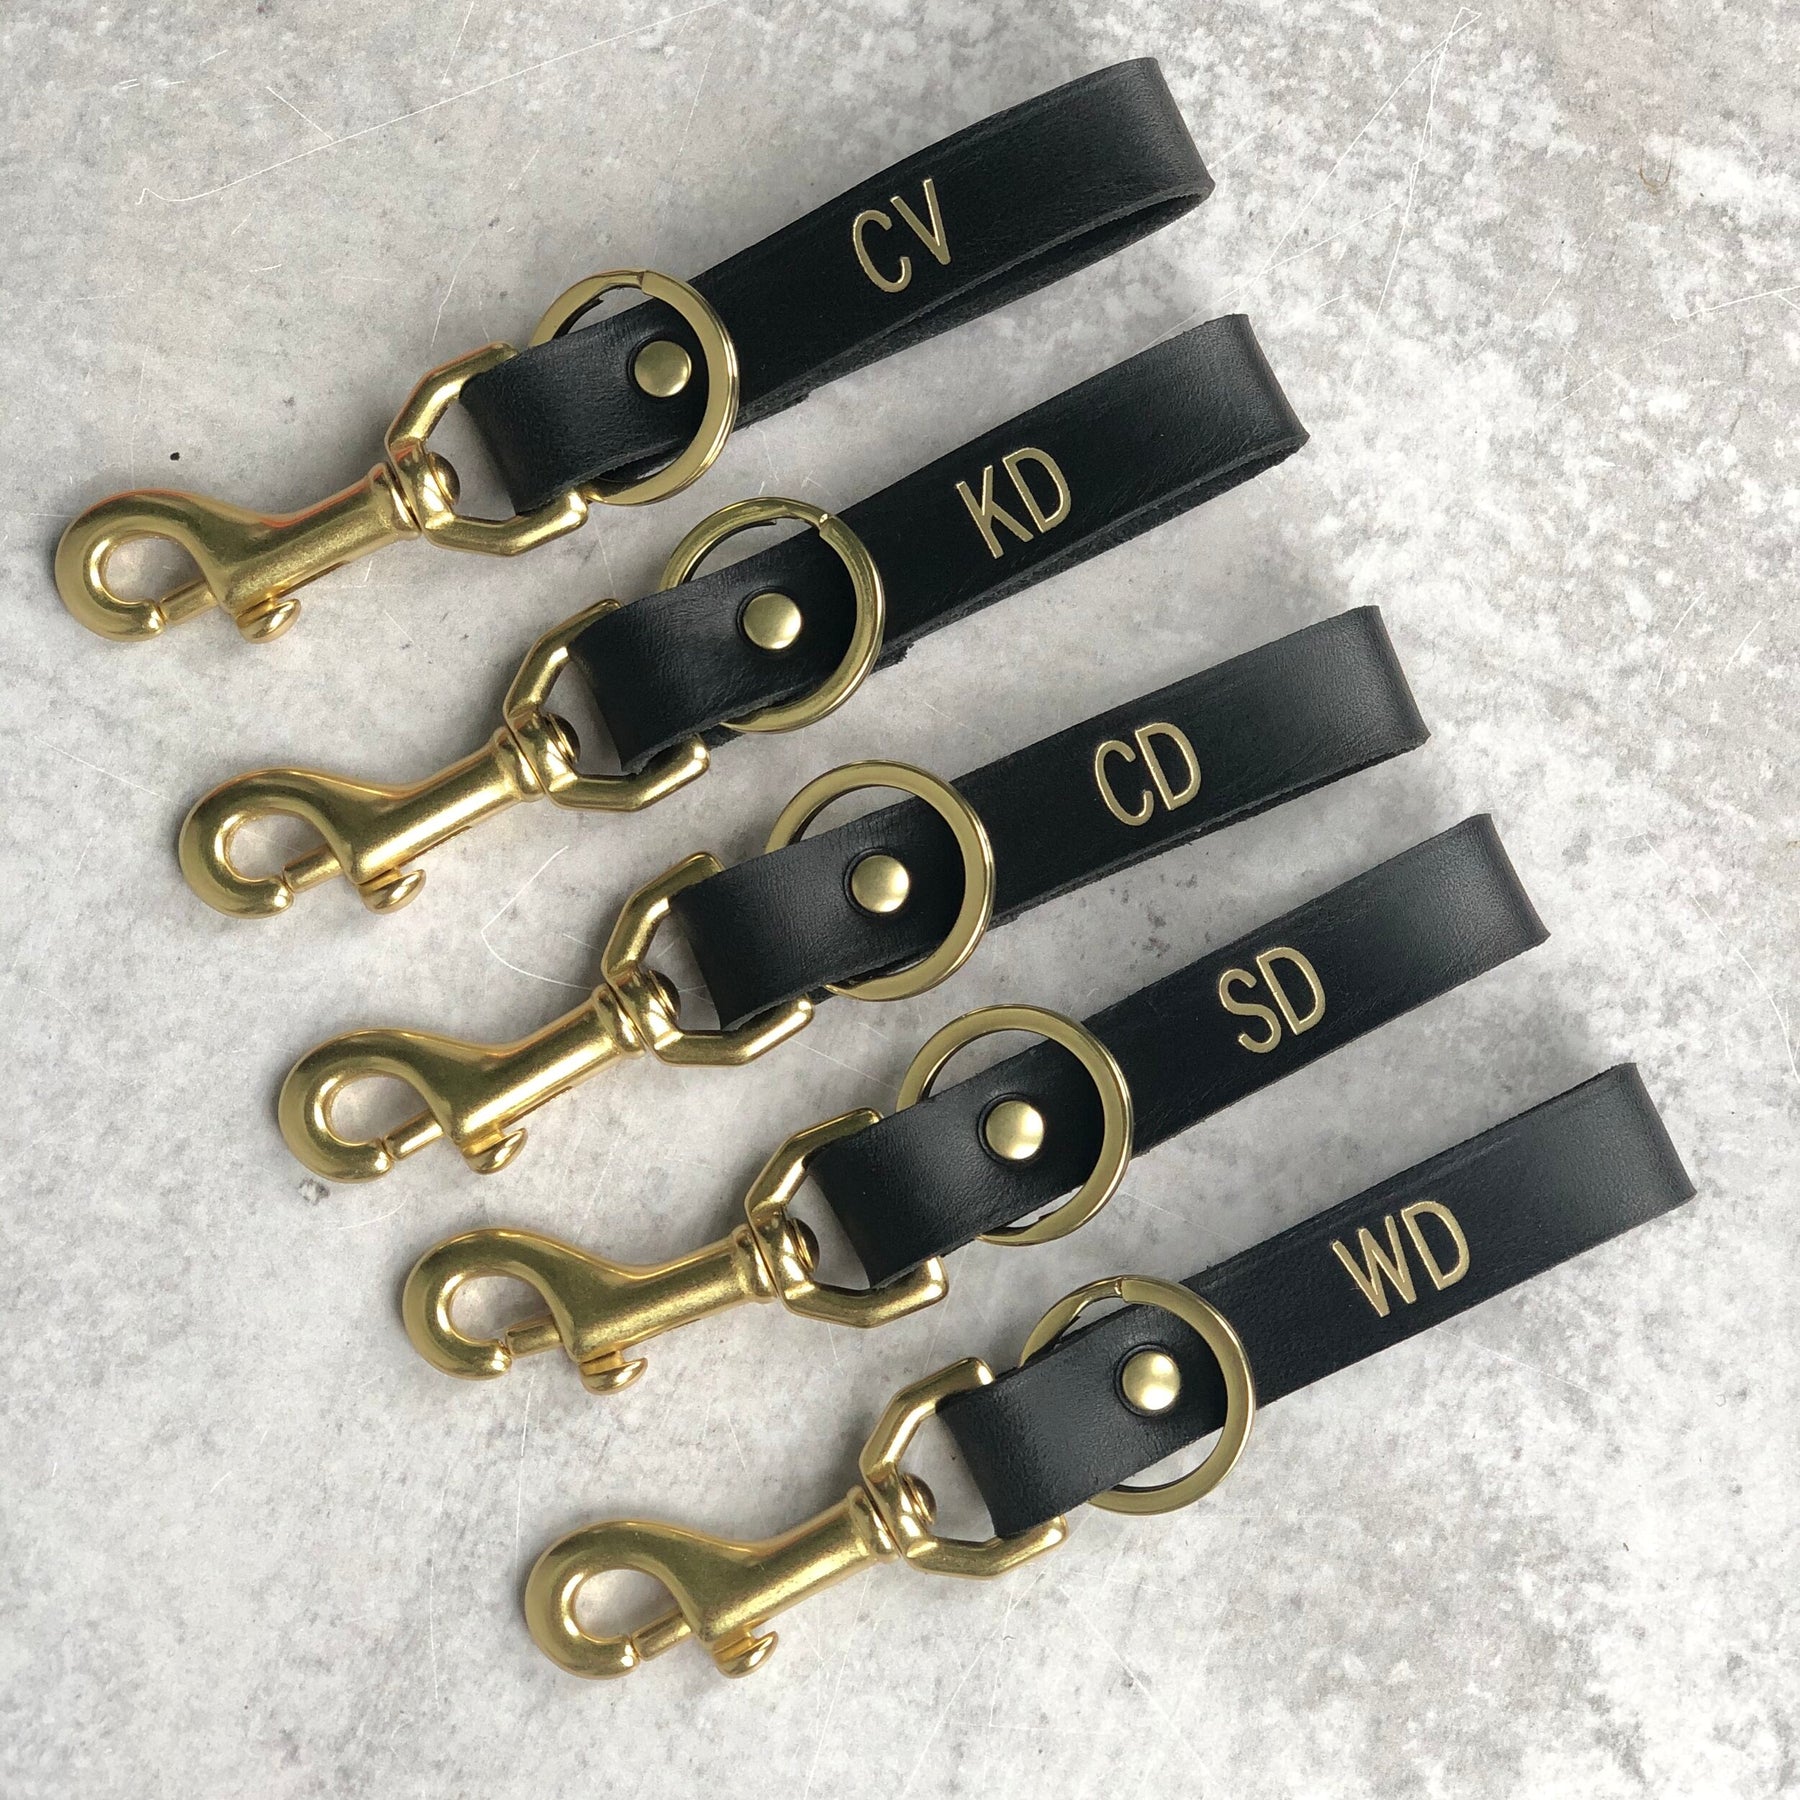 JulietteRoseDesigns Leather Tassel Keychain